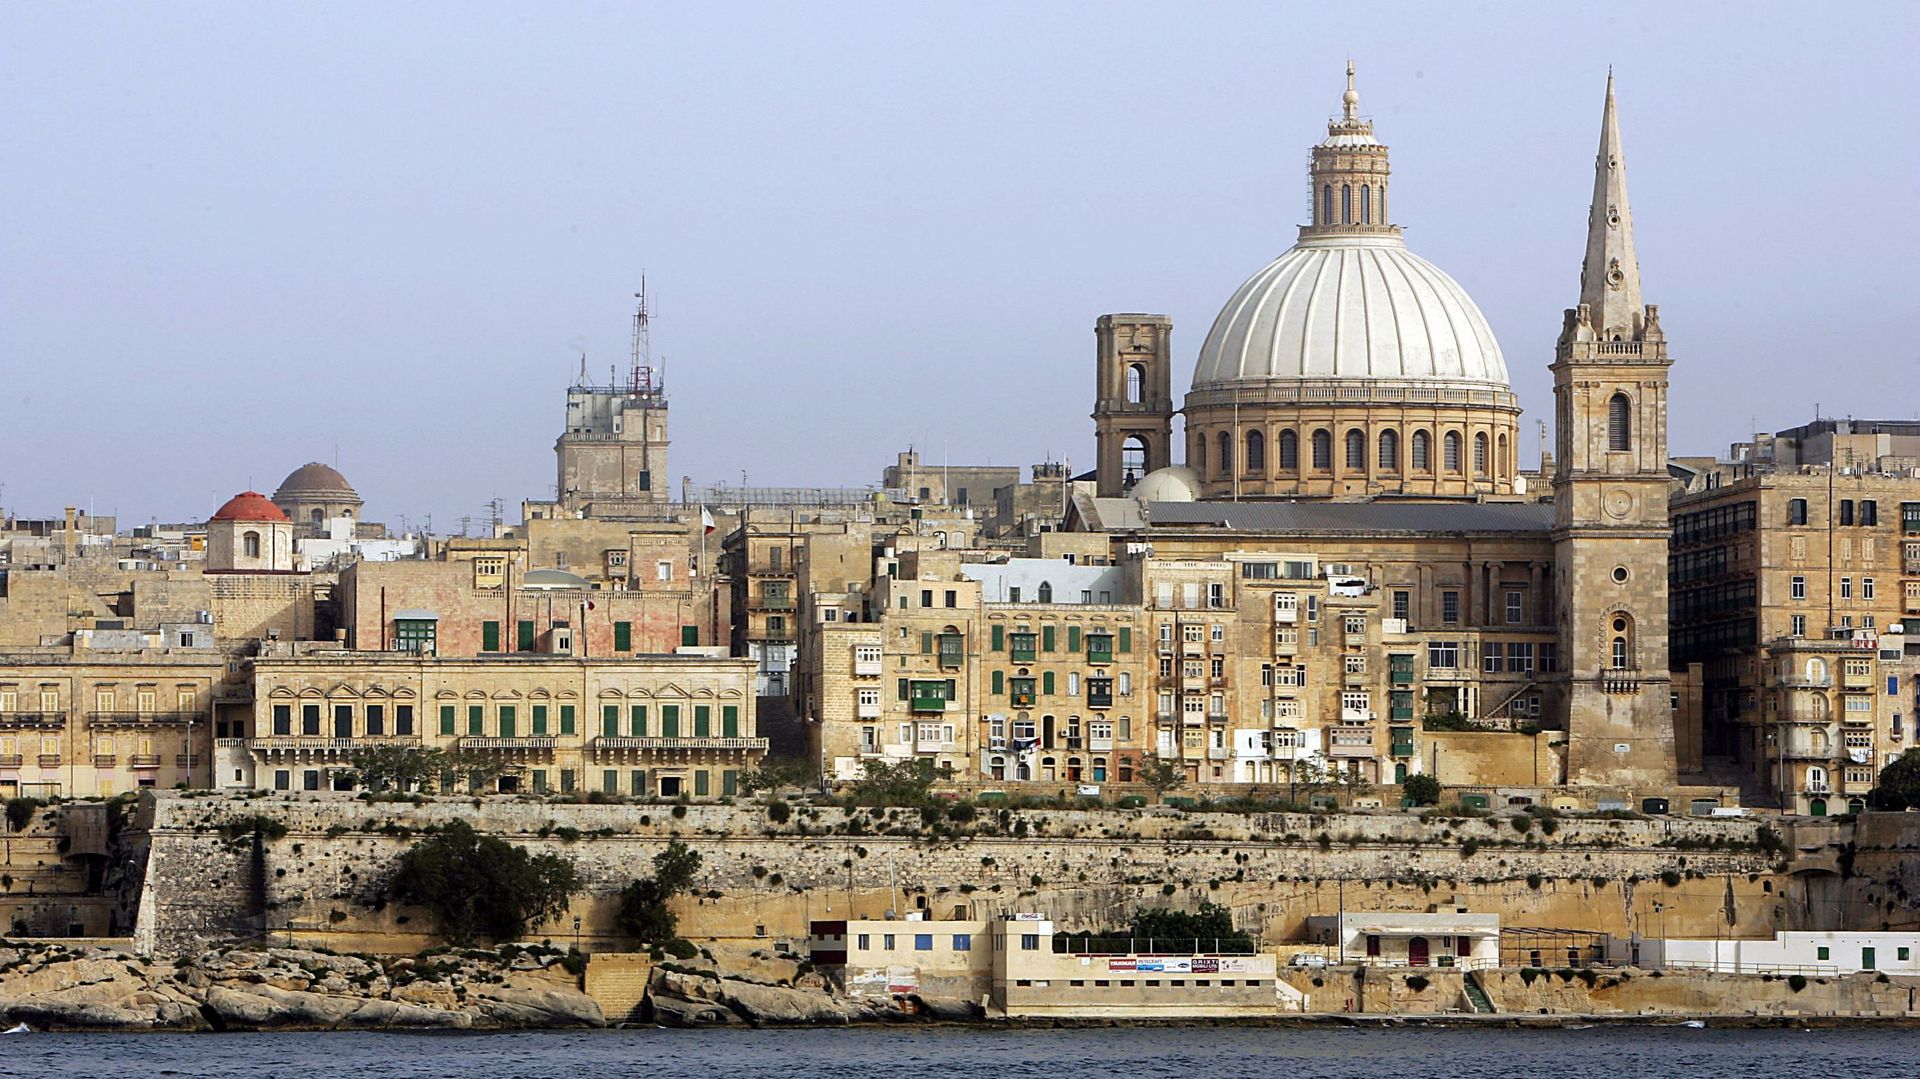 Vue sur la Valette, la capitale de Malte, en 2005 (image d’illustration)